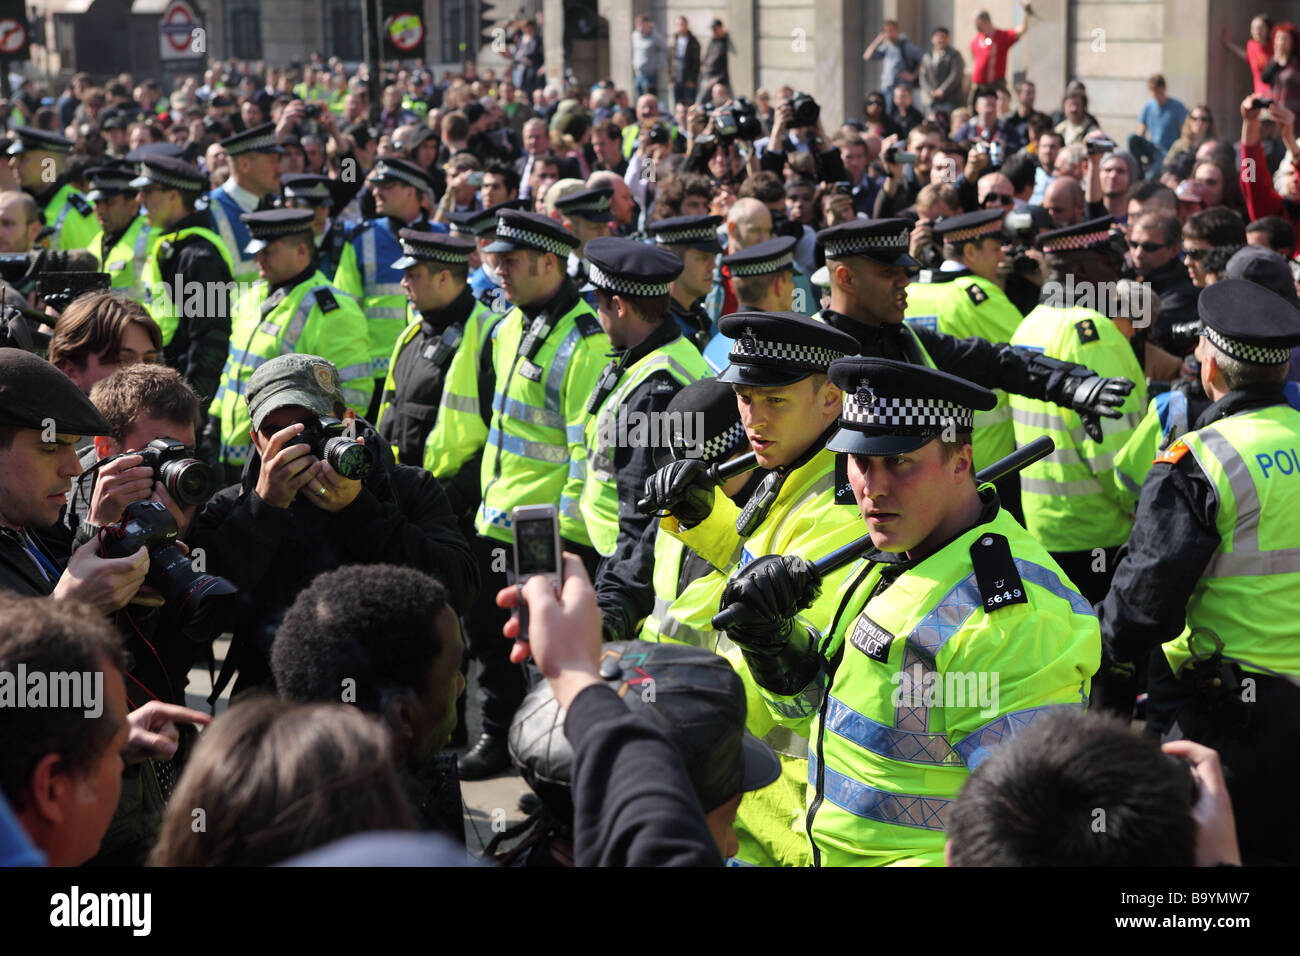 Des manifestants et la police clash à l'extérieur de la Banque d'Angleterre au cours de la 2009 Sommet du G20, Londres, Royaume-Uni. Banque D'Images